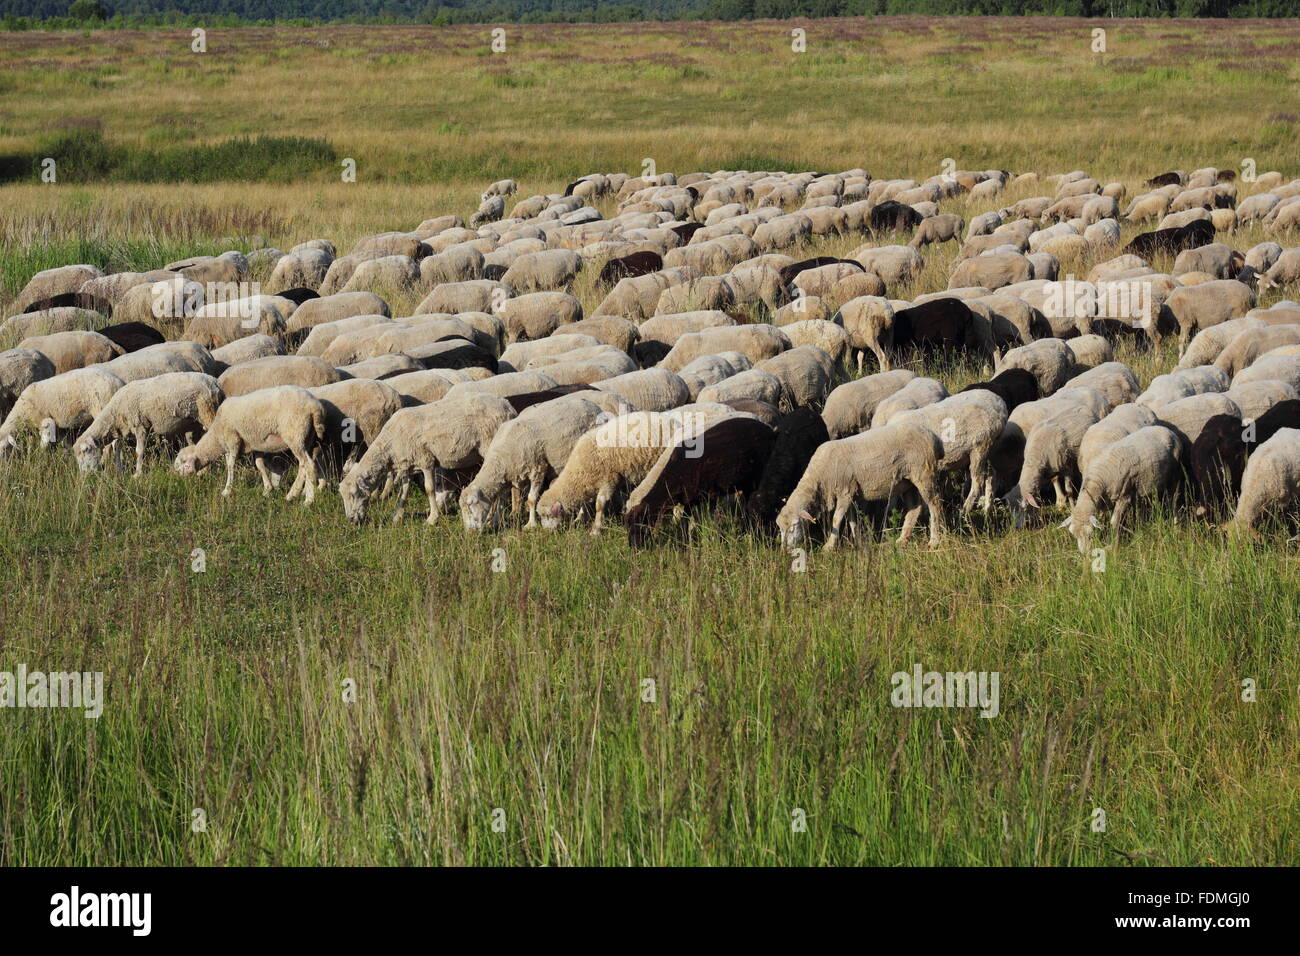 Eine Herde von Schafen auf dem grünen Rasen-Foto Stockfoto